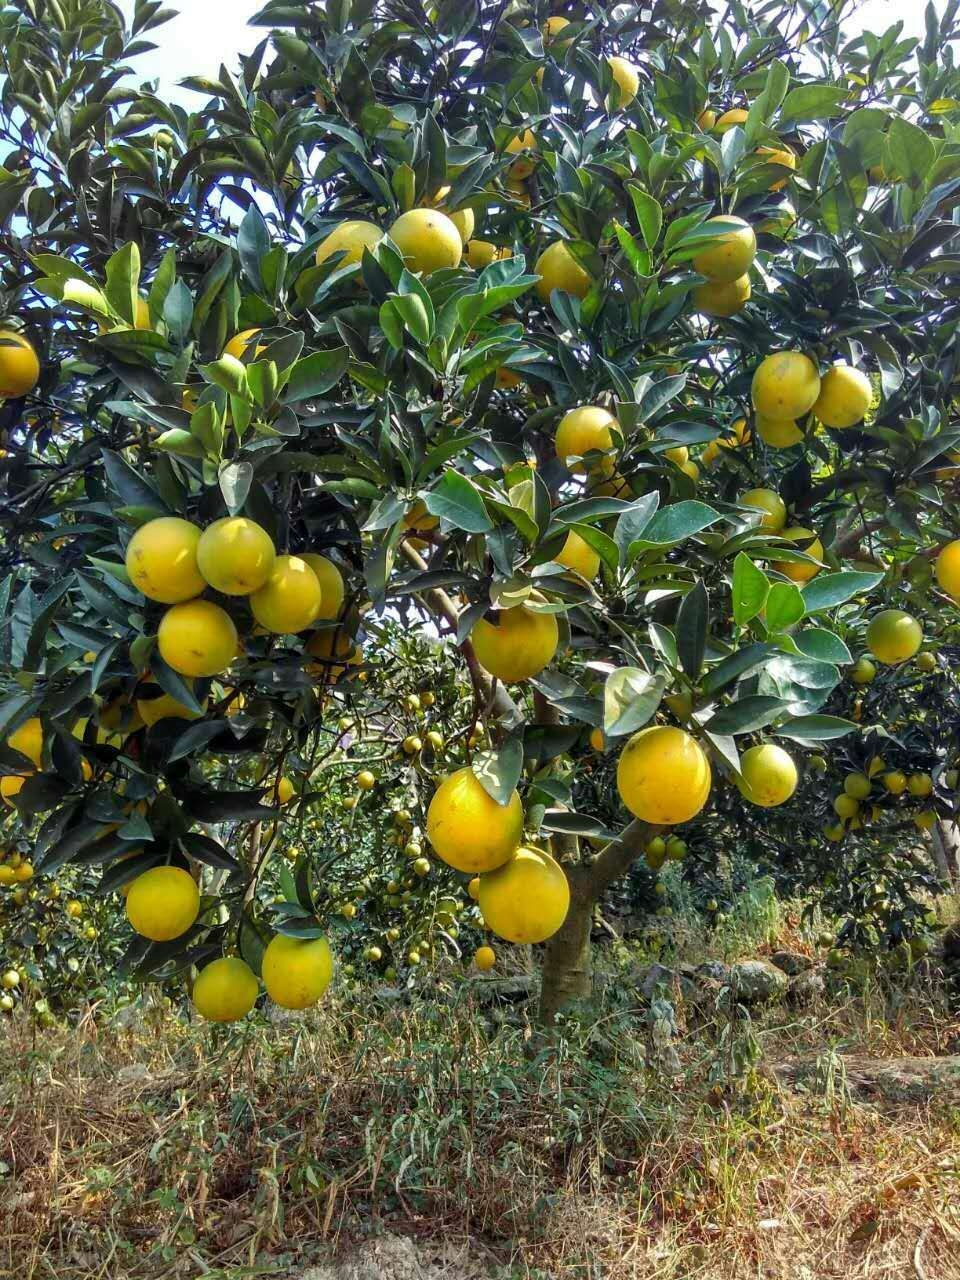 中国脐橙之乡,生态农产品脐橙的功效与作用。